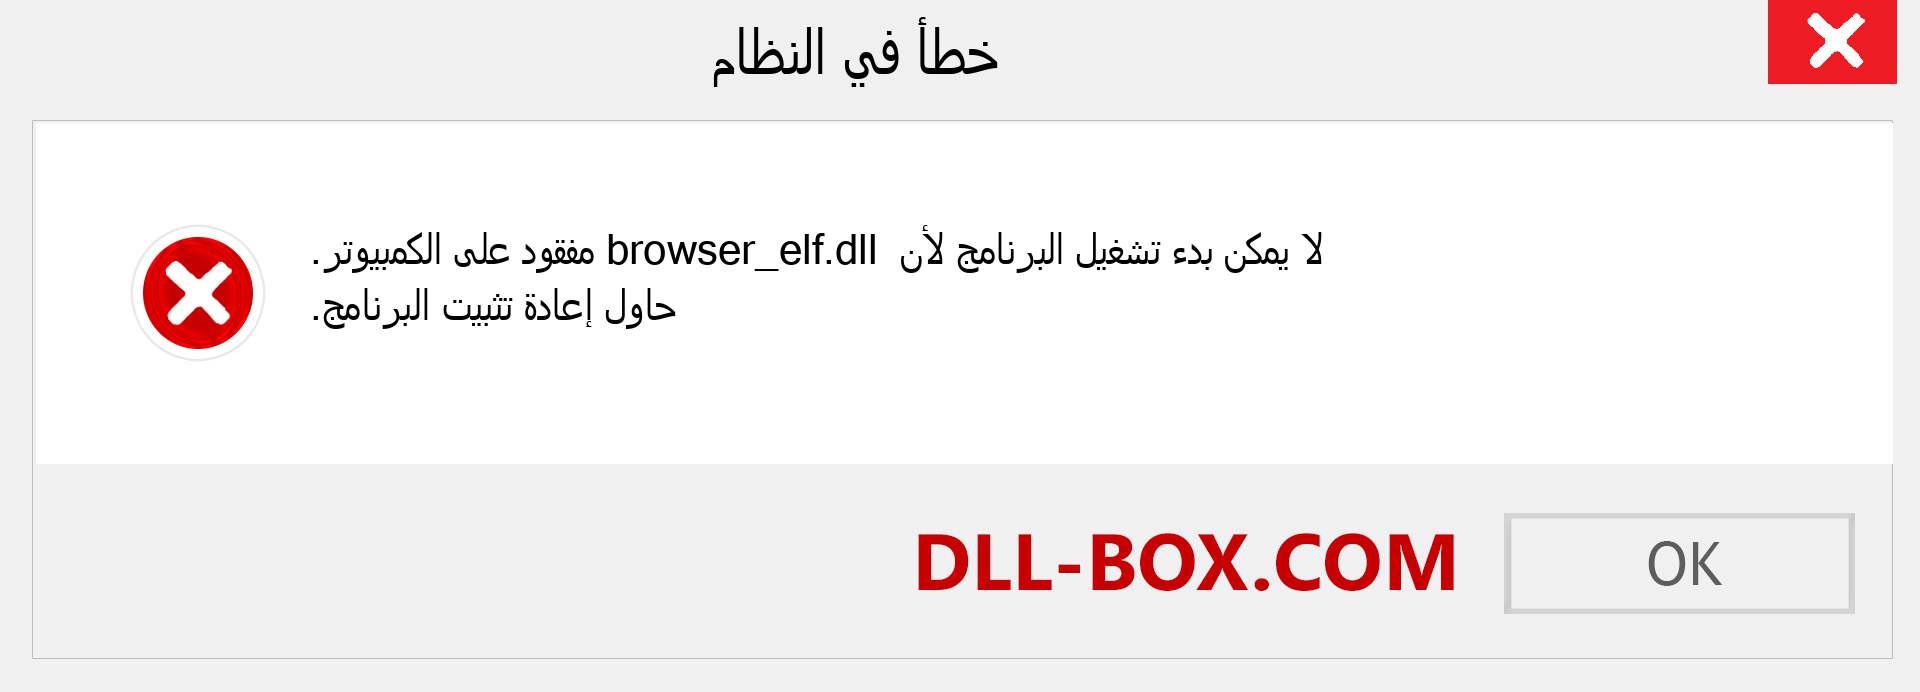 ملف browser_elf.dll مفقود ؟. التنزيل لنظام التشغيل Windows 7 و 8 و 10 - إصلاح خطأ browser_elf dll المفقود على Windows والصور والصور